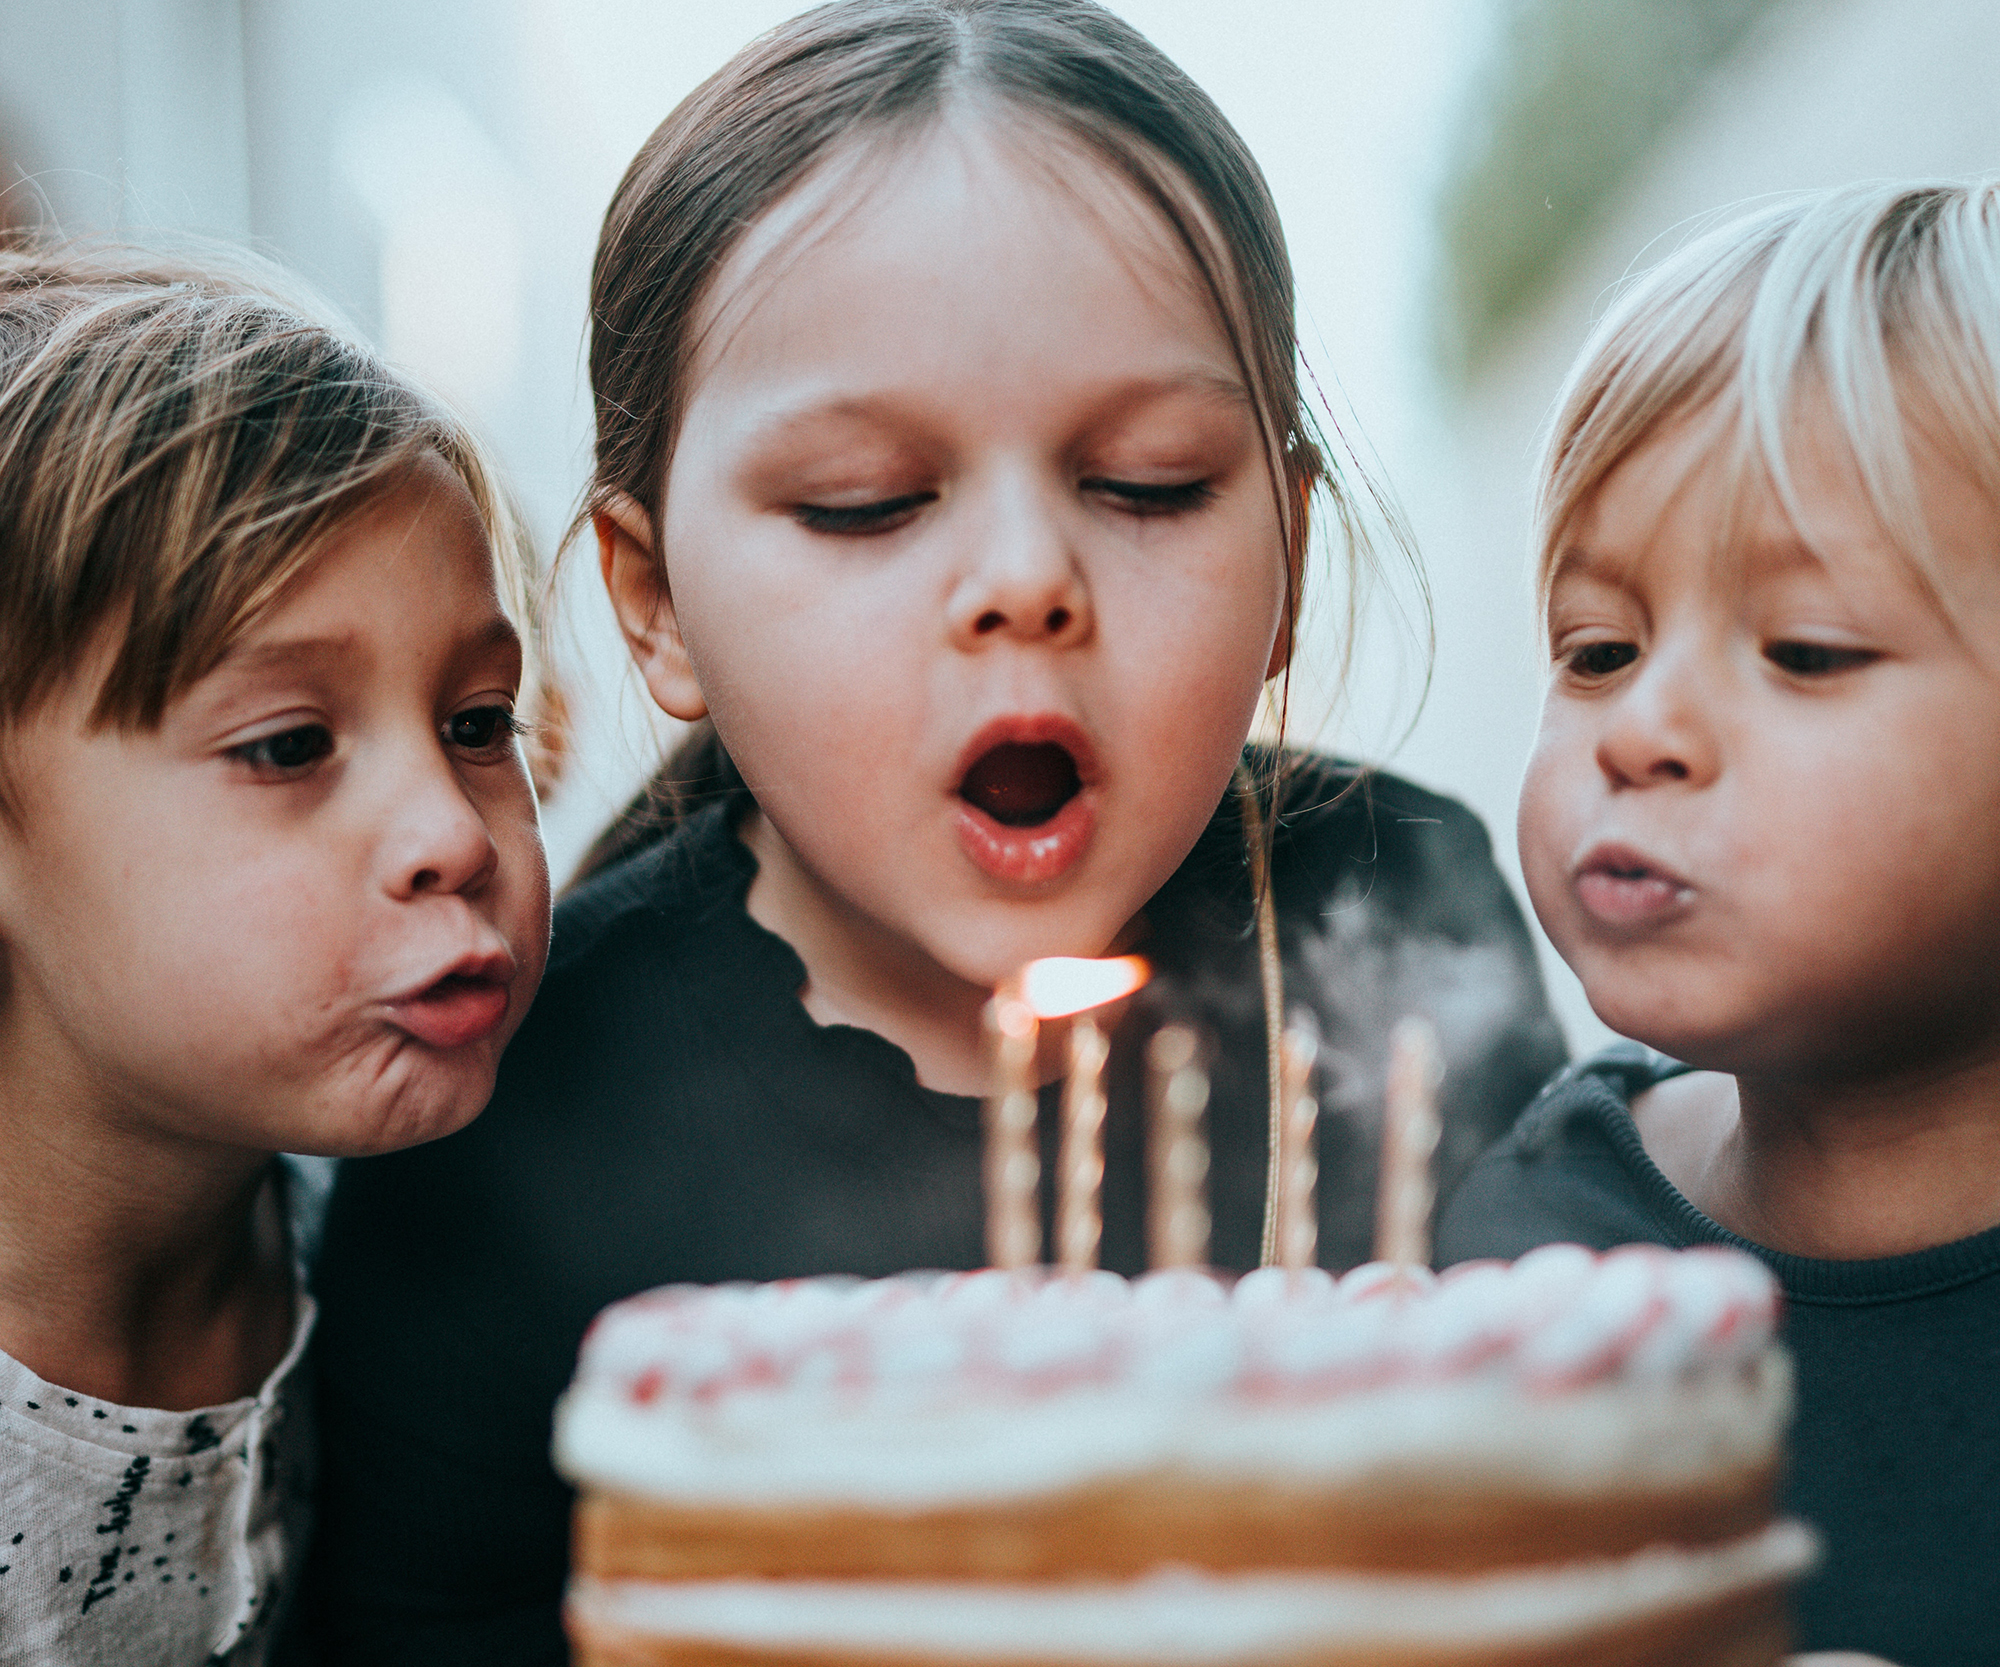 30 activités pour réussir l'anniversaire de votre enfant